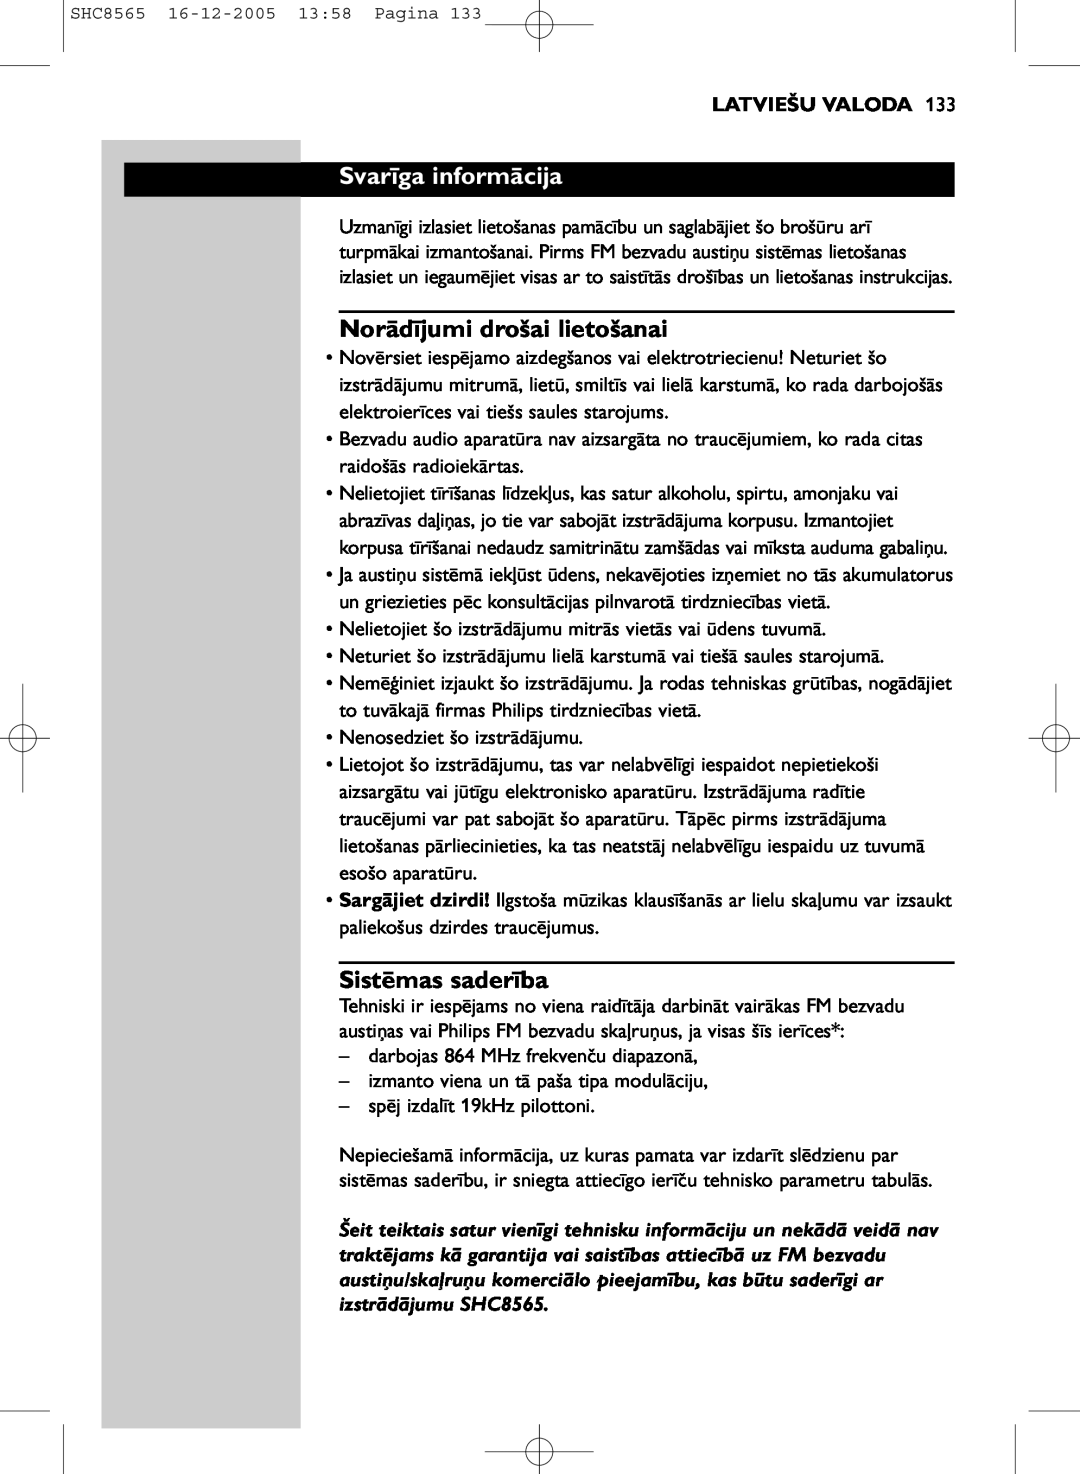 Philips SHC8565 manual Svarīga informācija, Norādījumi drošai lietošanai, Sistēmas saderība, Latviešu Valoda 